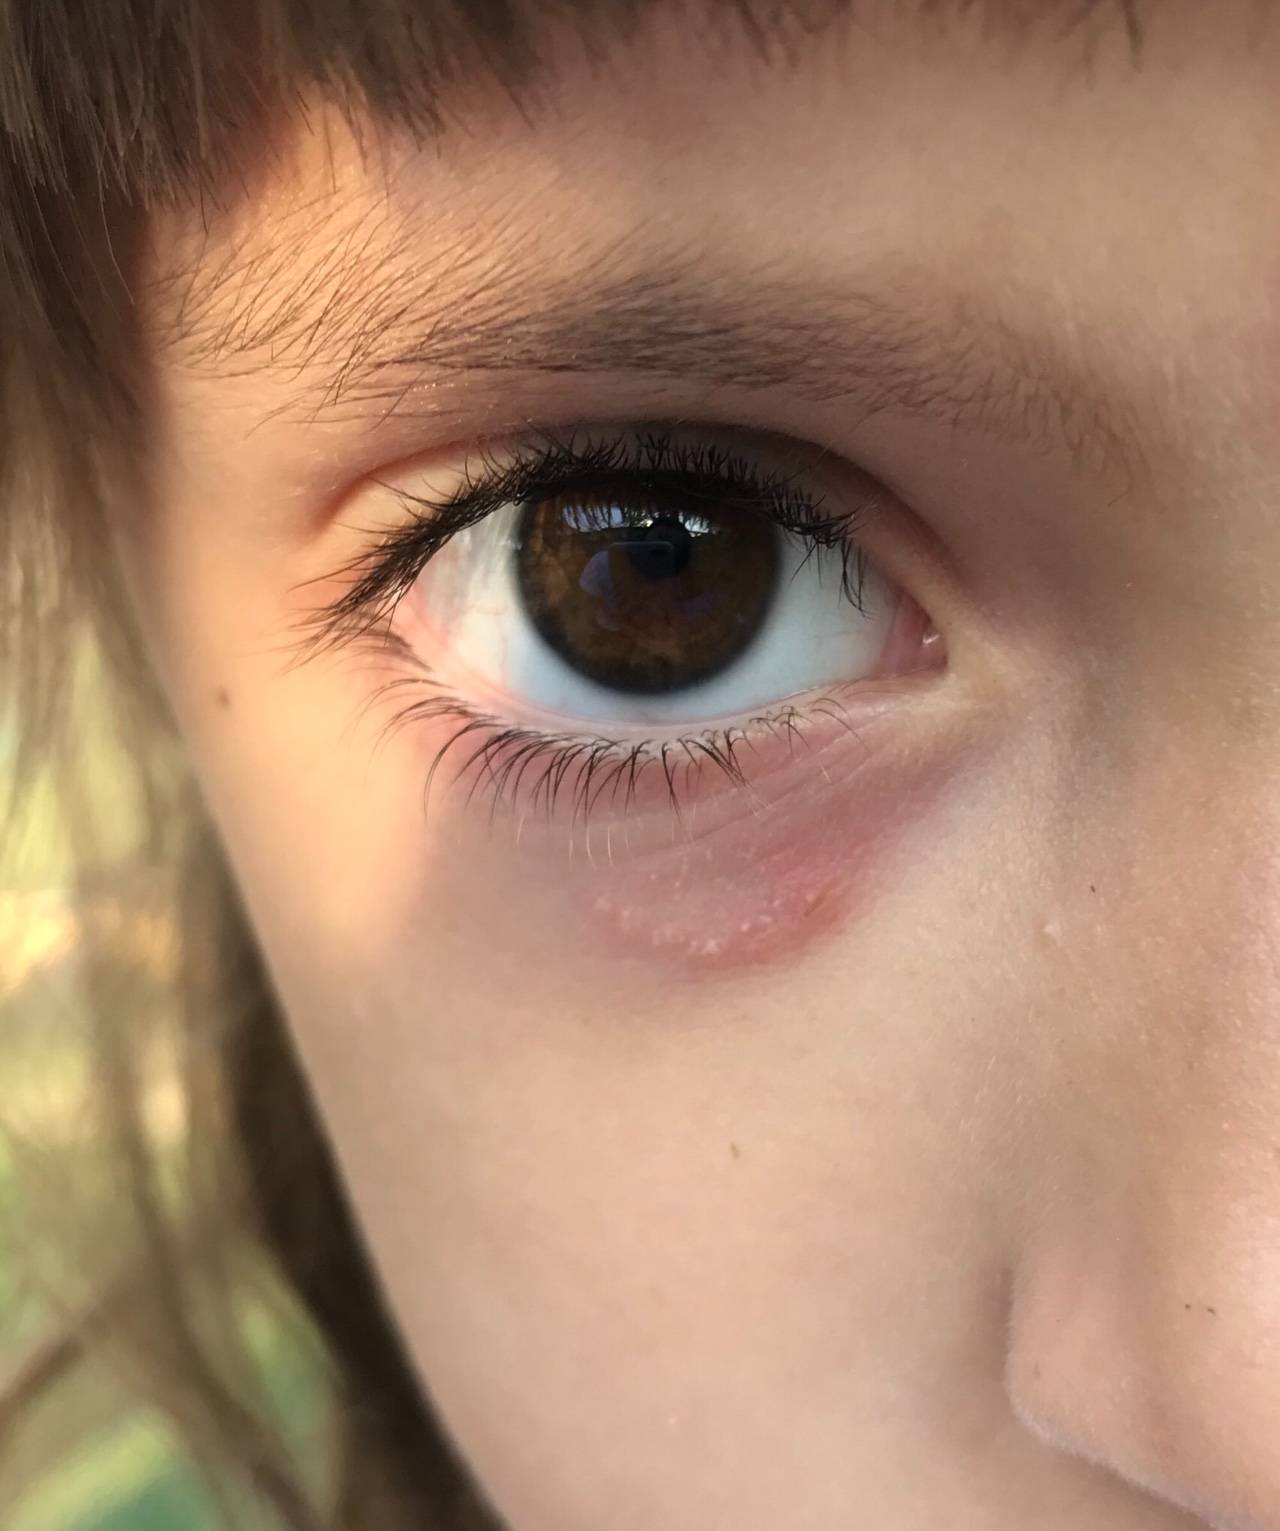 Аллергия вокруг глаз  - симптомы, причины, профилактика и лечение